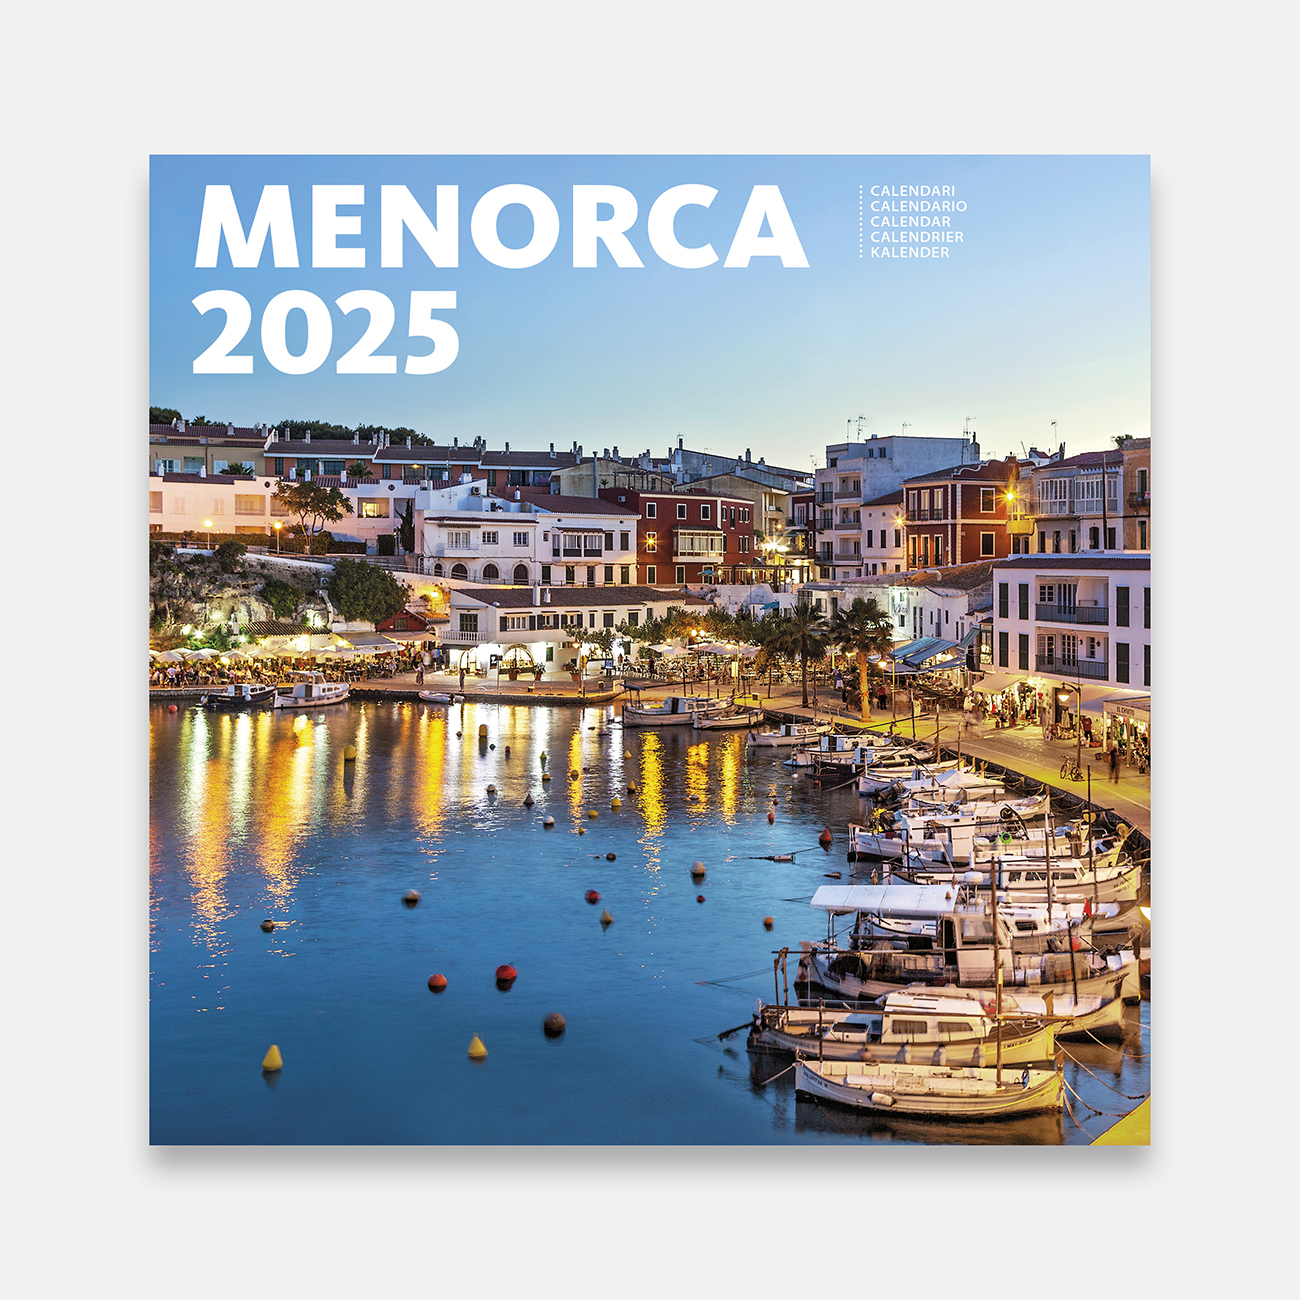 Calendario 2025 Menorca 25me b calendario pared 2025 menorca